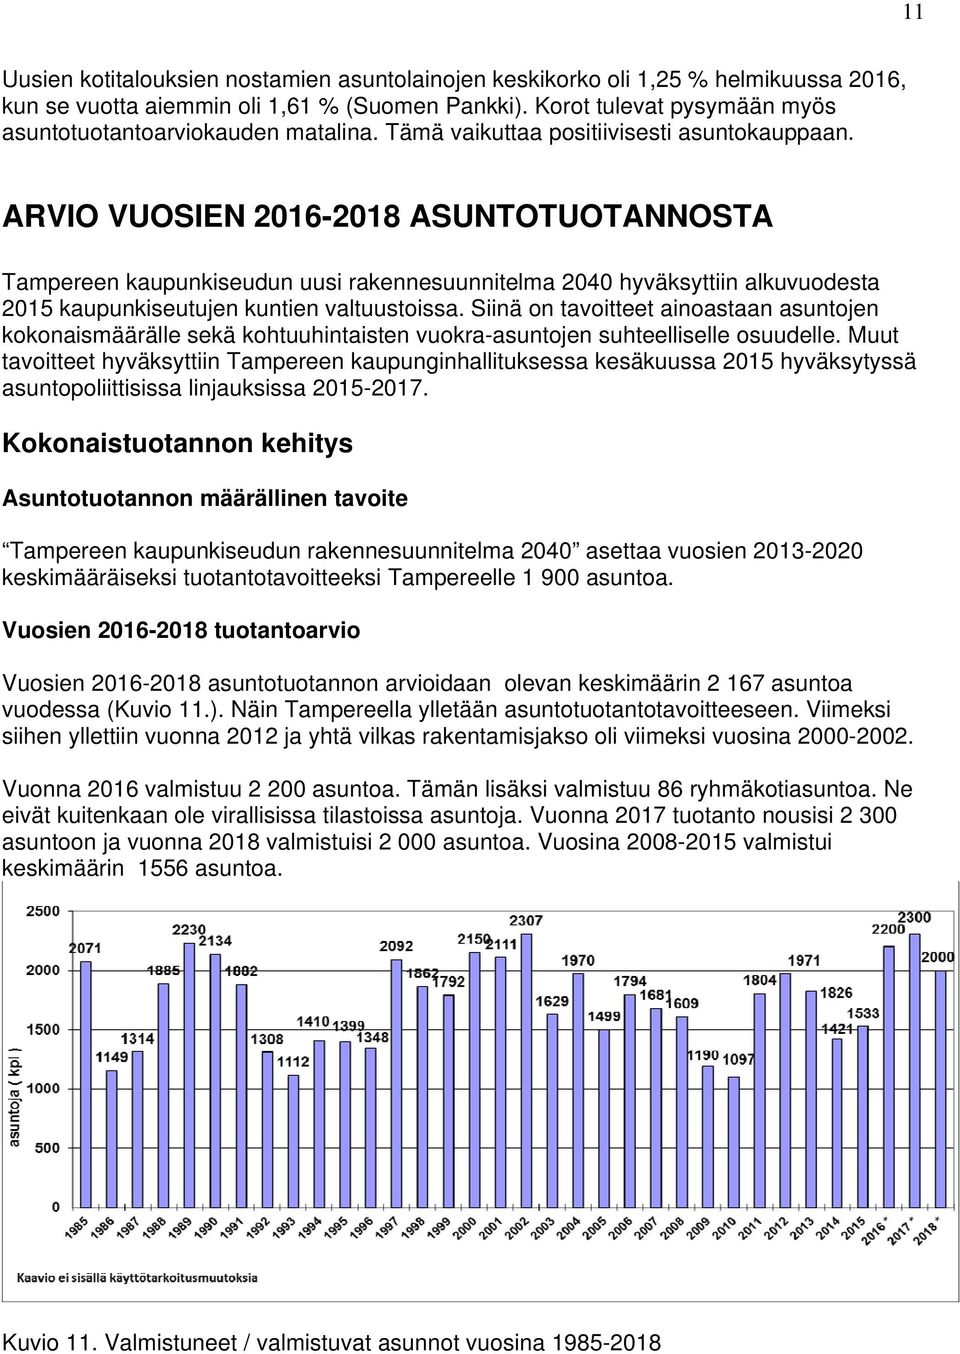 ARVIO VUOSIEN 2016-2018 ASUNTOTUOTANNOSTA Tampereen kaupunkiseudun uusi rakennesuunnitelma 2040 hyväksyttiin alkuvuodesta 2015 kaupunkiseutujen kuntien valtuustoissa.